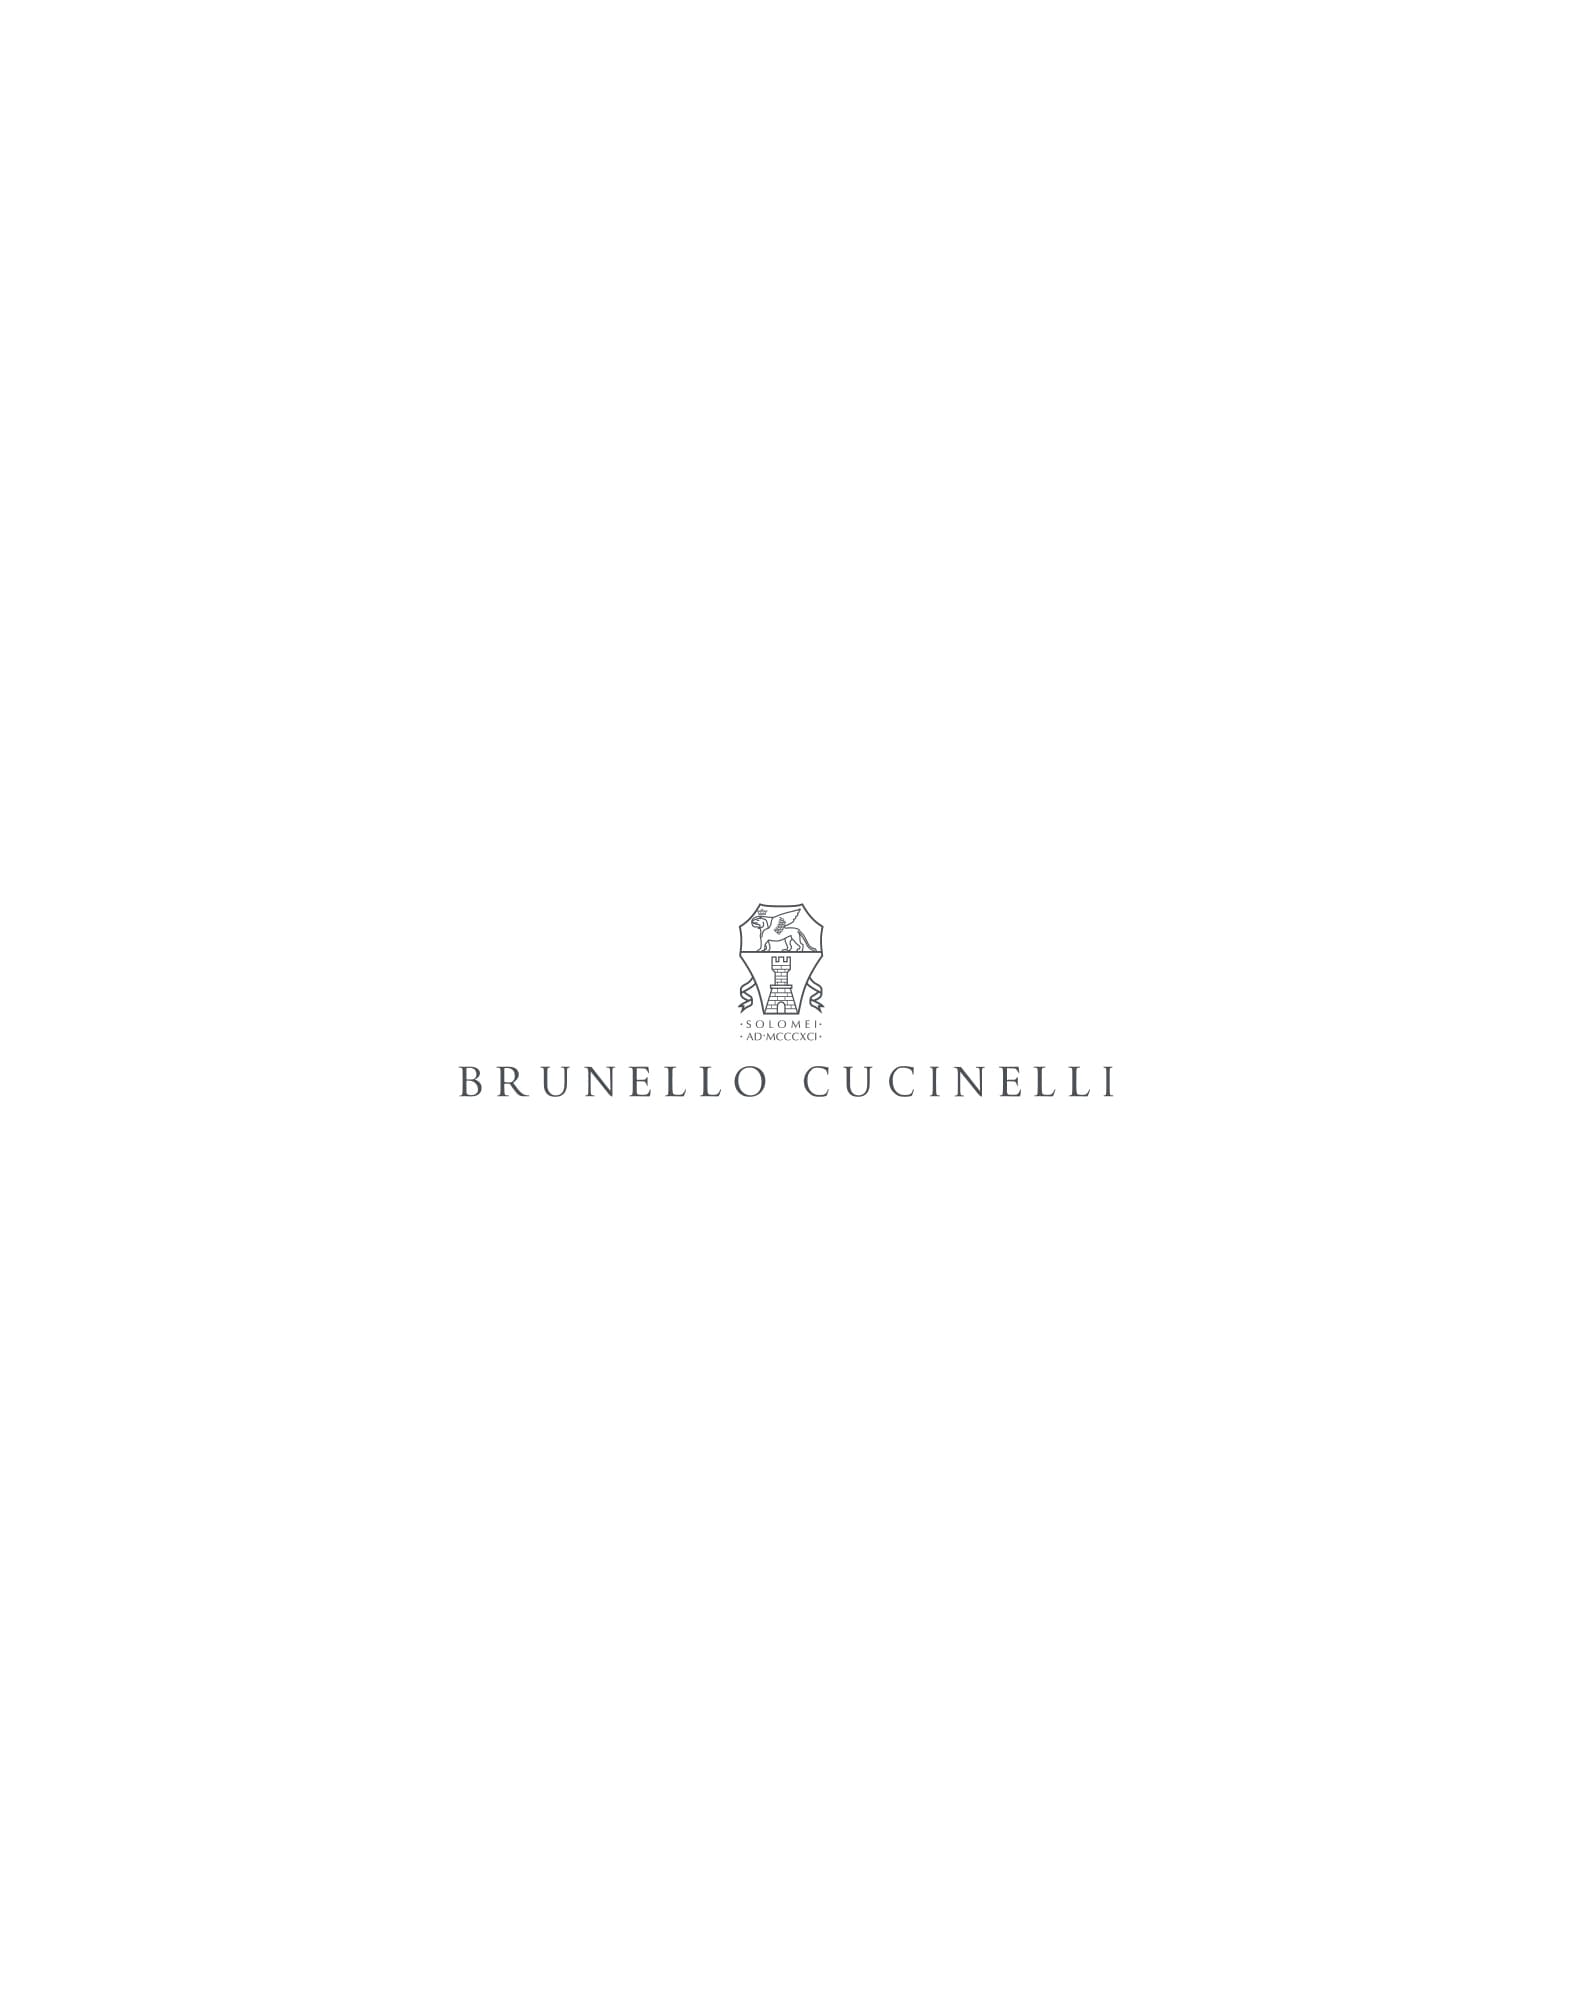 テーブルナプキン 4枚セット ナチュラル ライフスタイル - Brunello Cucinelli